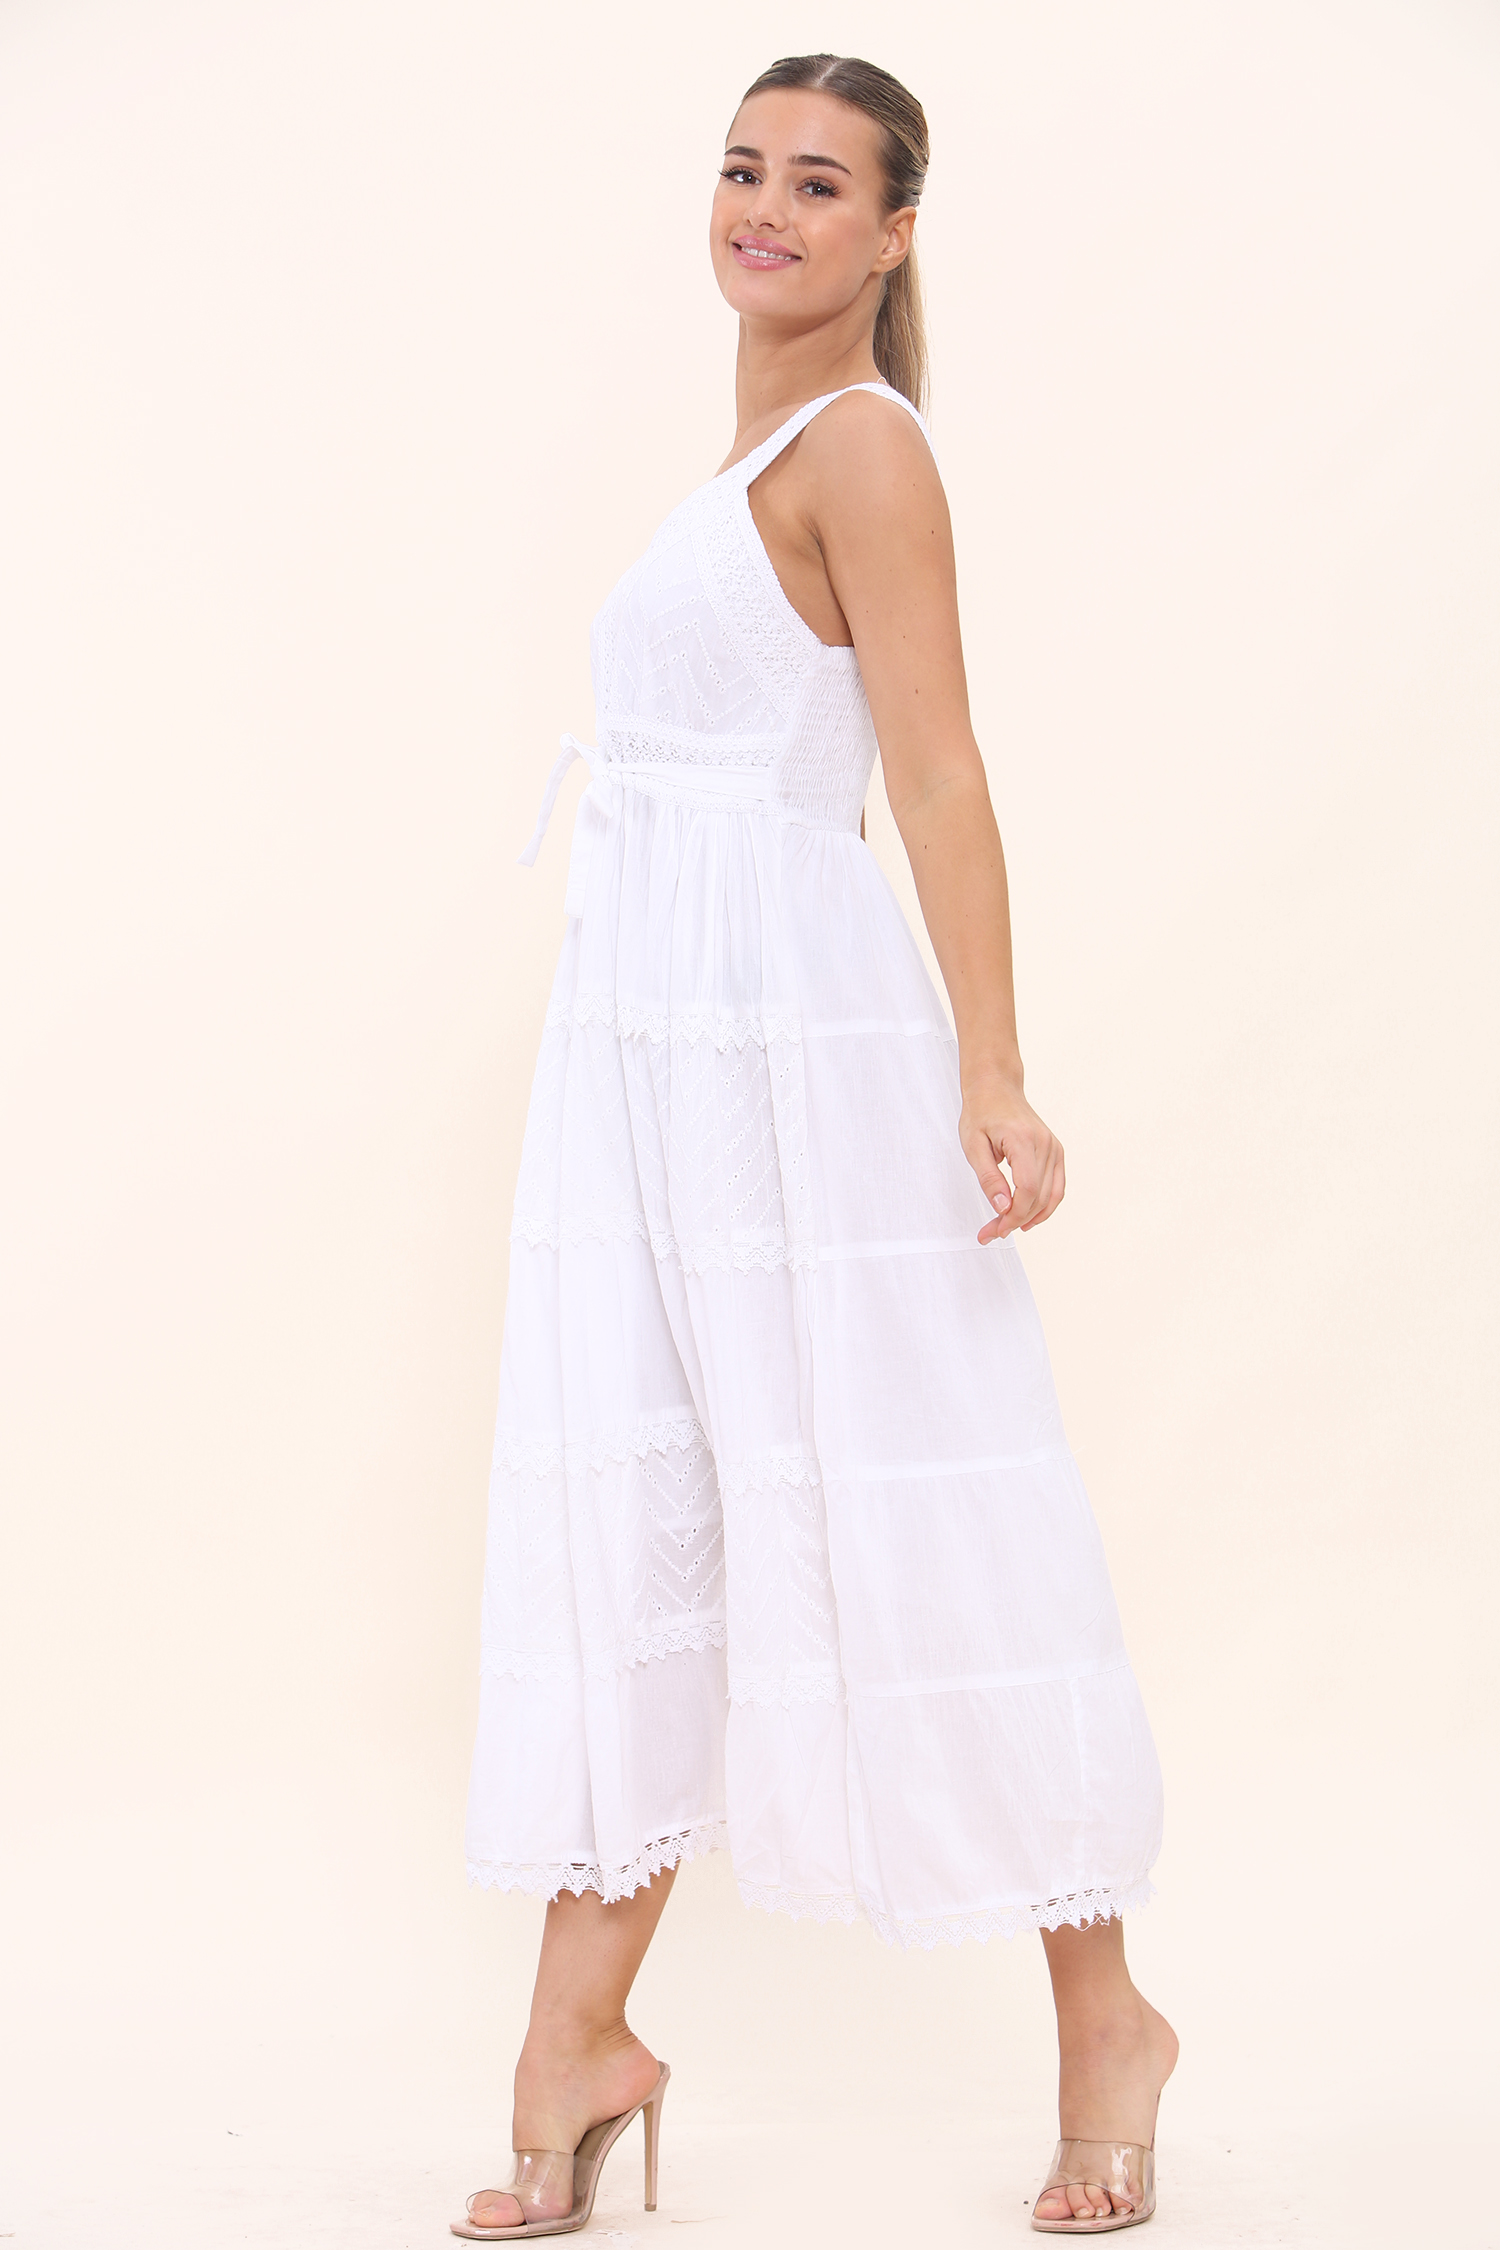 Cotton Summer Beach Long Dress 48 pcs #9003